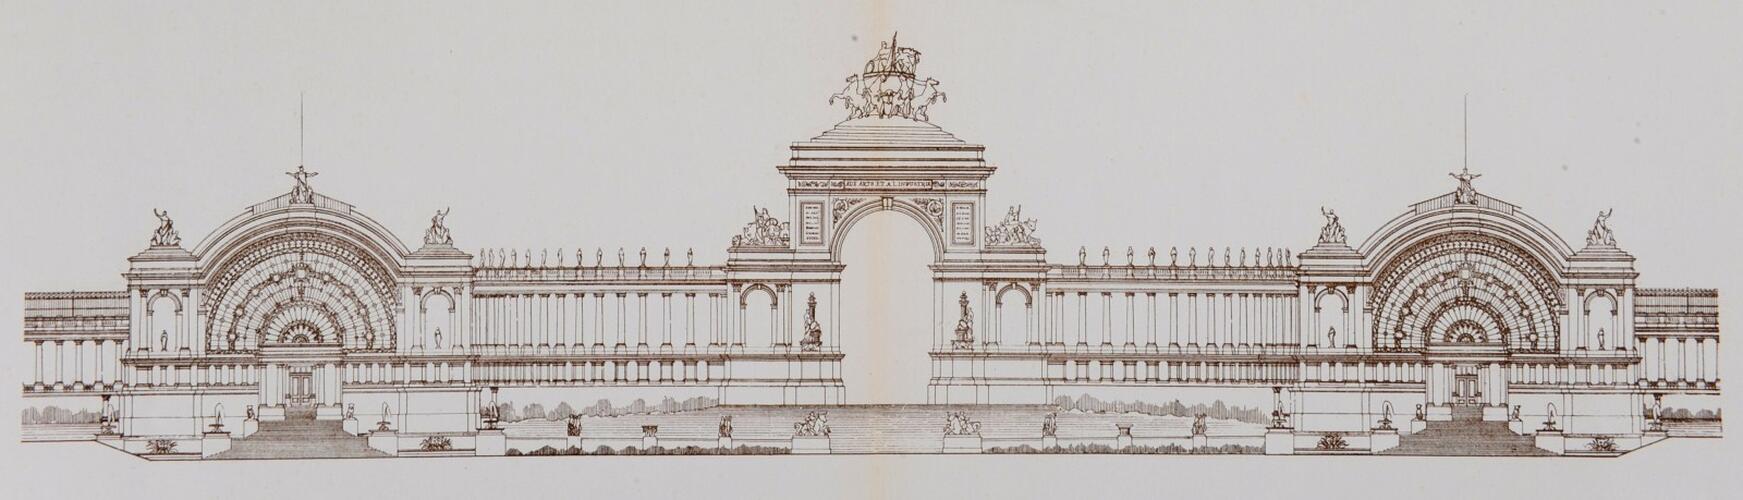 Projet de palais pour l’Exposition nationale de 1880, dessiné par Gédéon Bordiau, élévation vers la ville, [i]L’Émulation[/i], 1881, pl. 3-4.